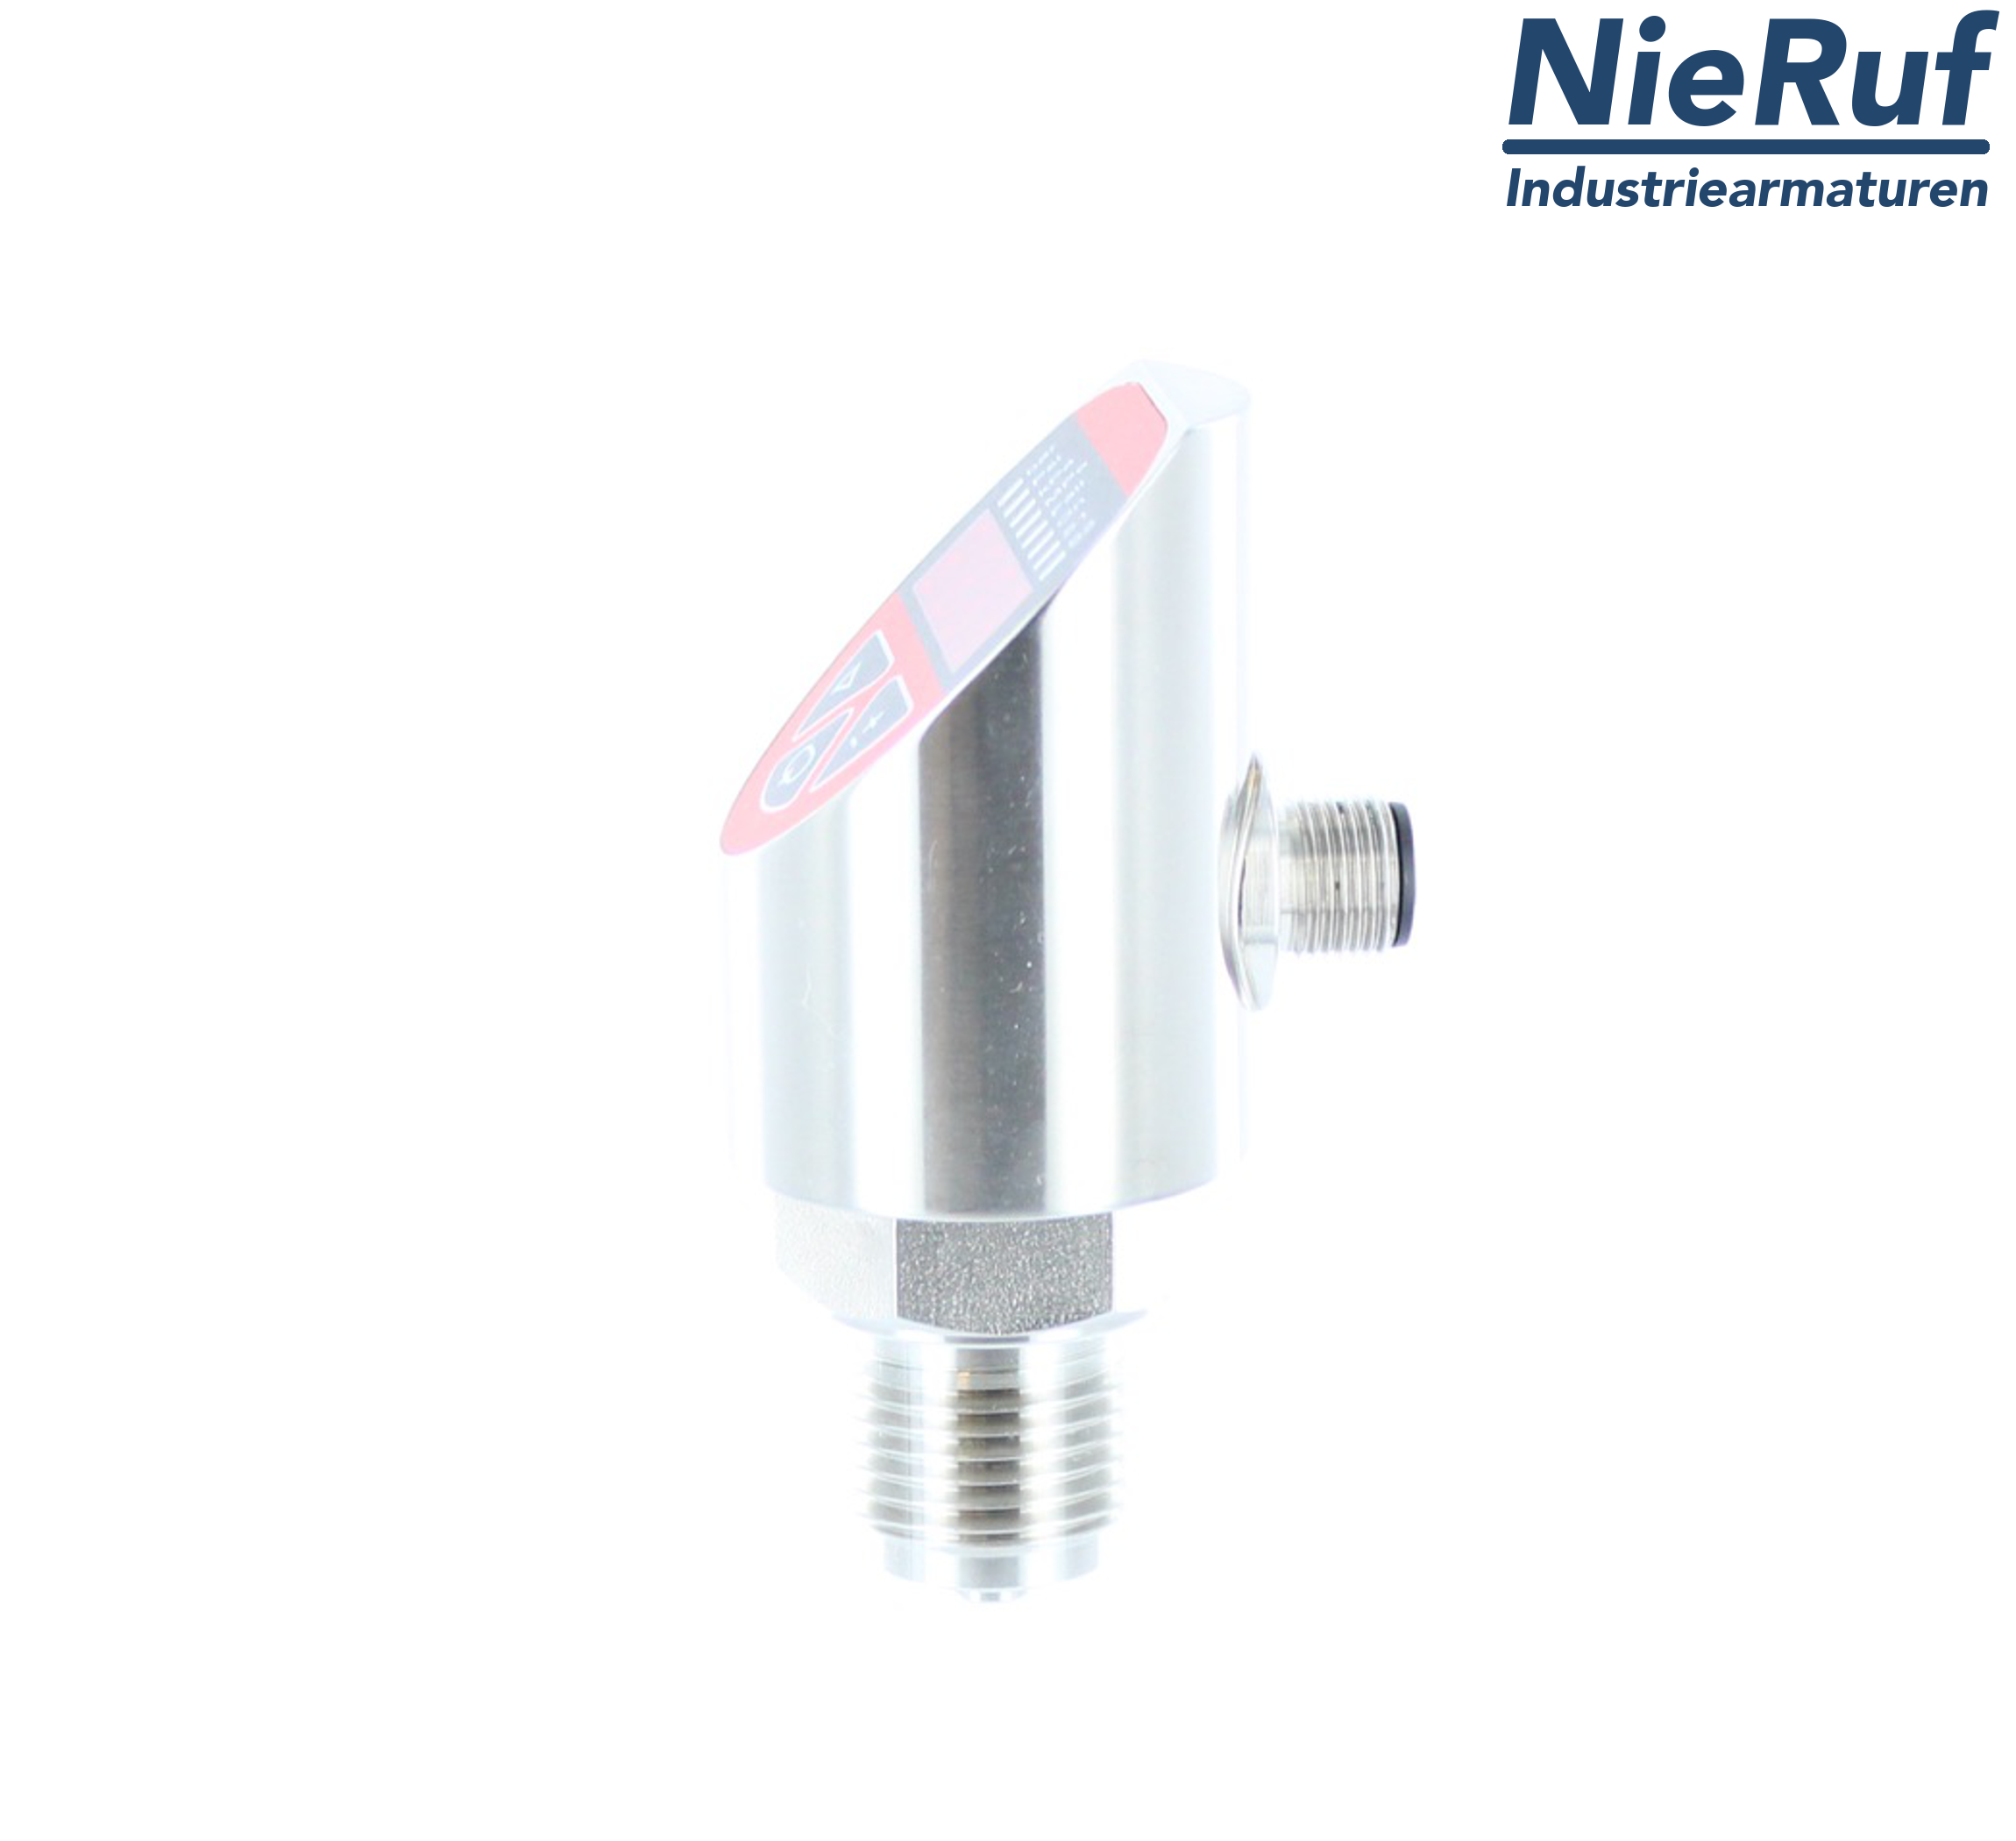 digital pressure sensor G 1/2" B IB 4-wire: 1xPNP, 1x4 - 20mA, Desina FPM 0,0 - 40,0 bar